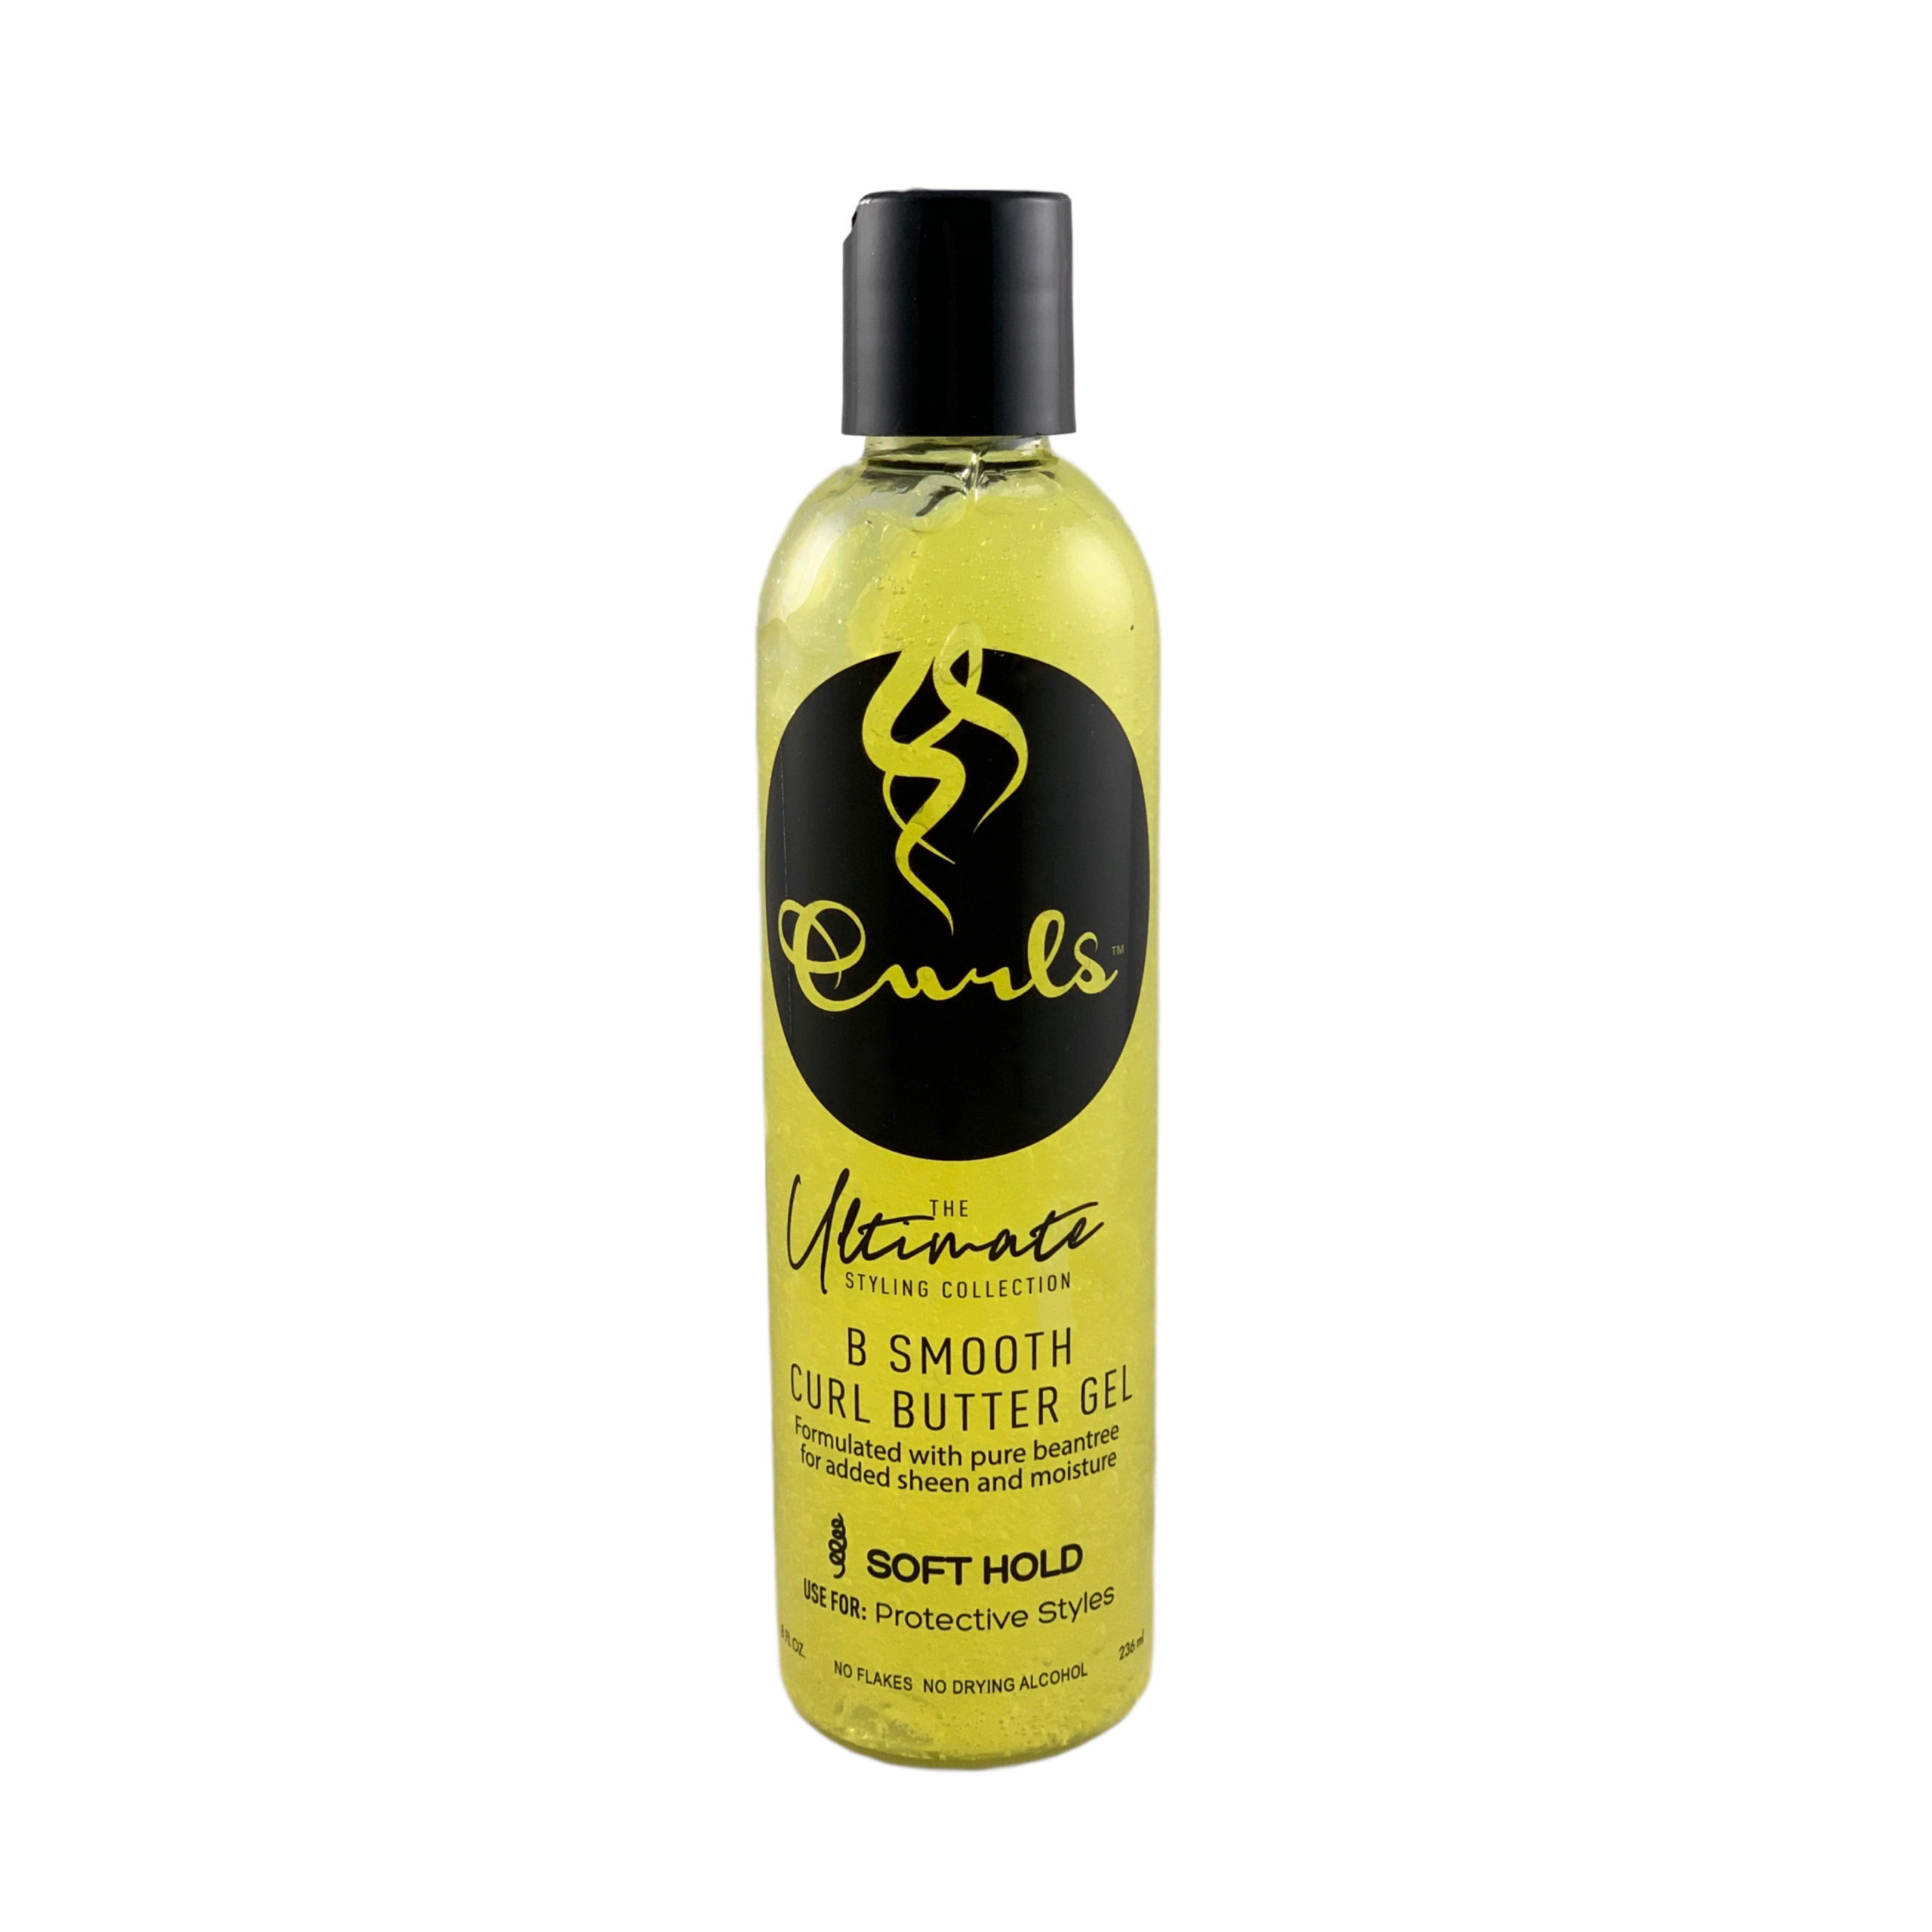 B Smooth Curl Butter Gel 8oz - International Beauty Supplies LLC